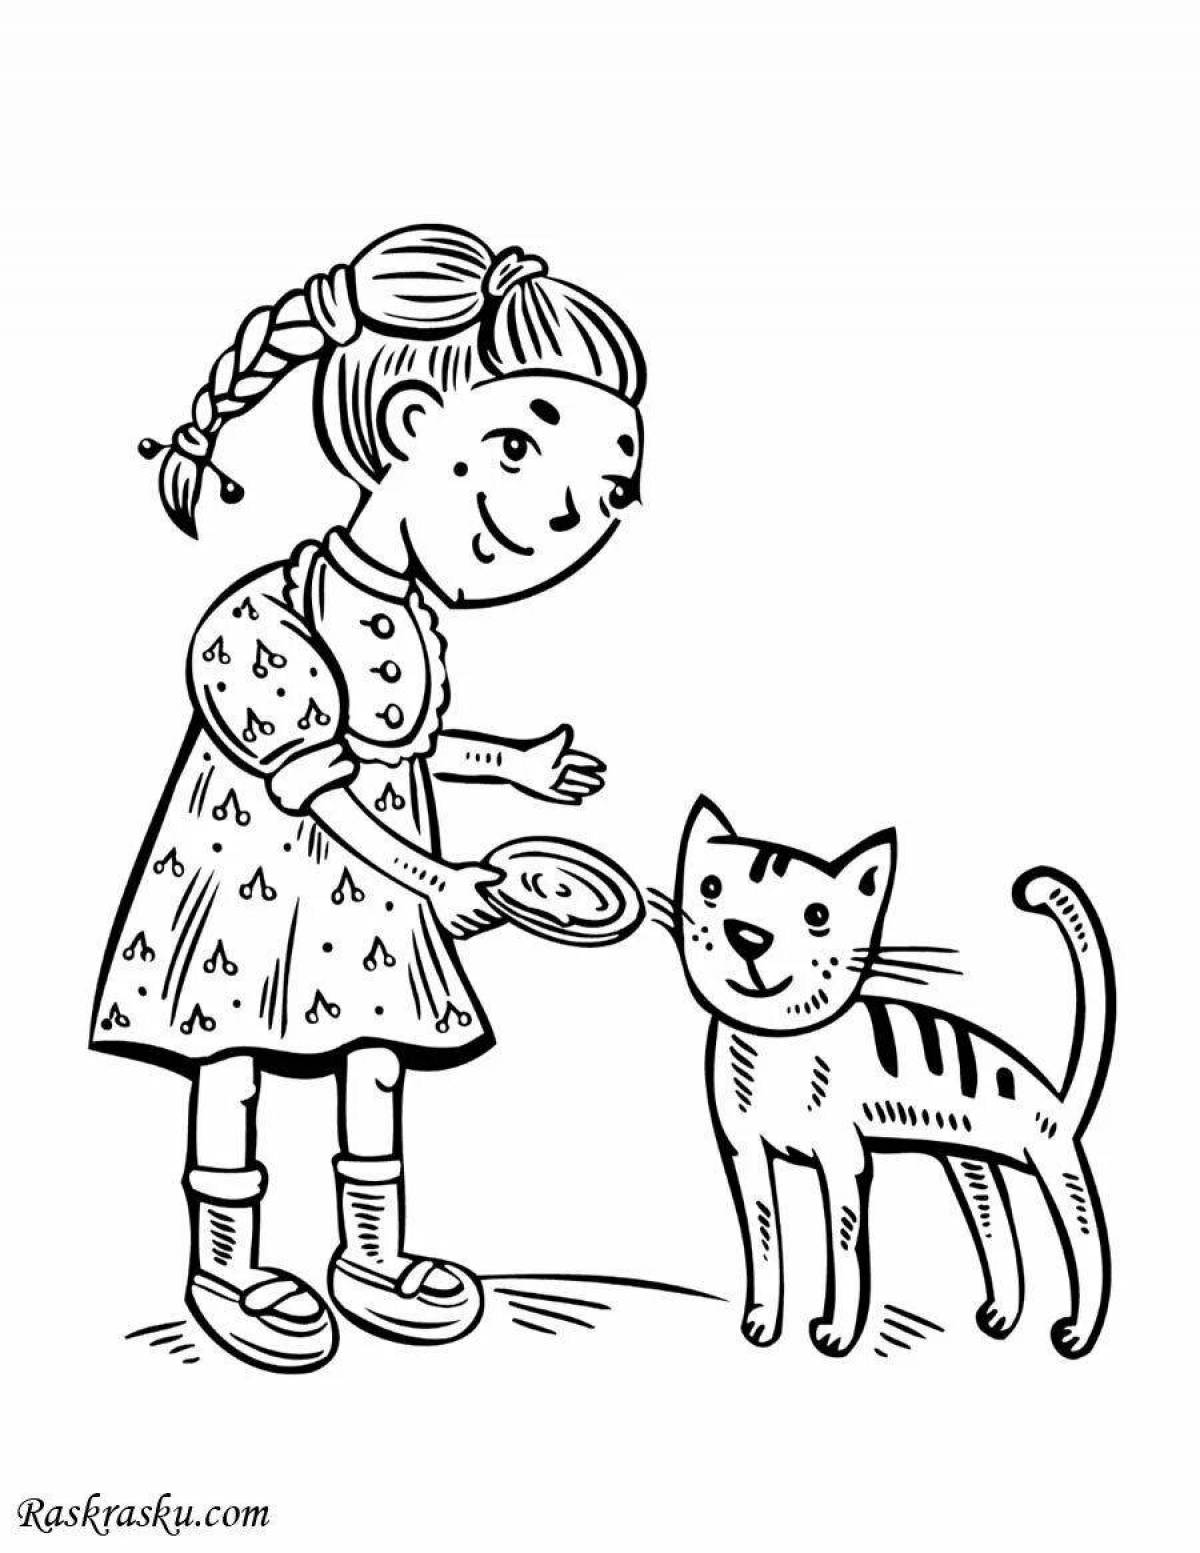 Раскраски бесплатно онлайн с цветами девочка с кошкой